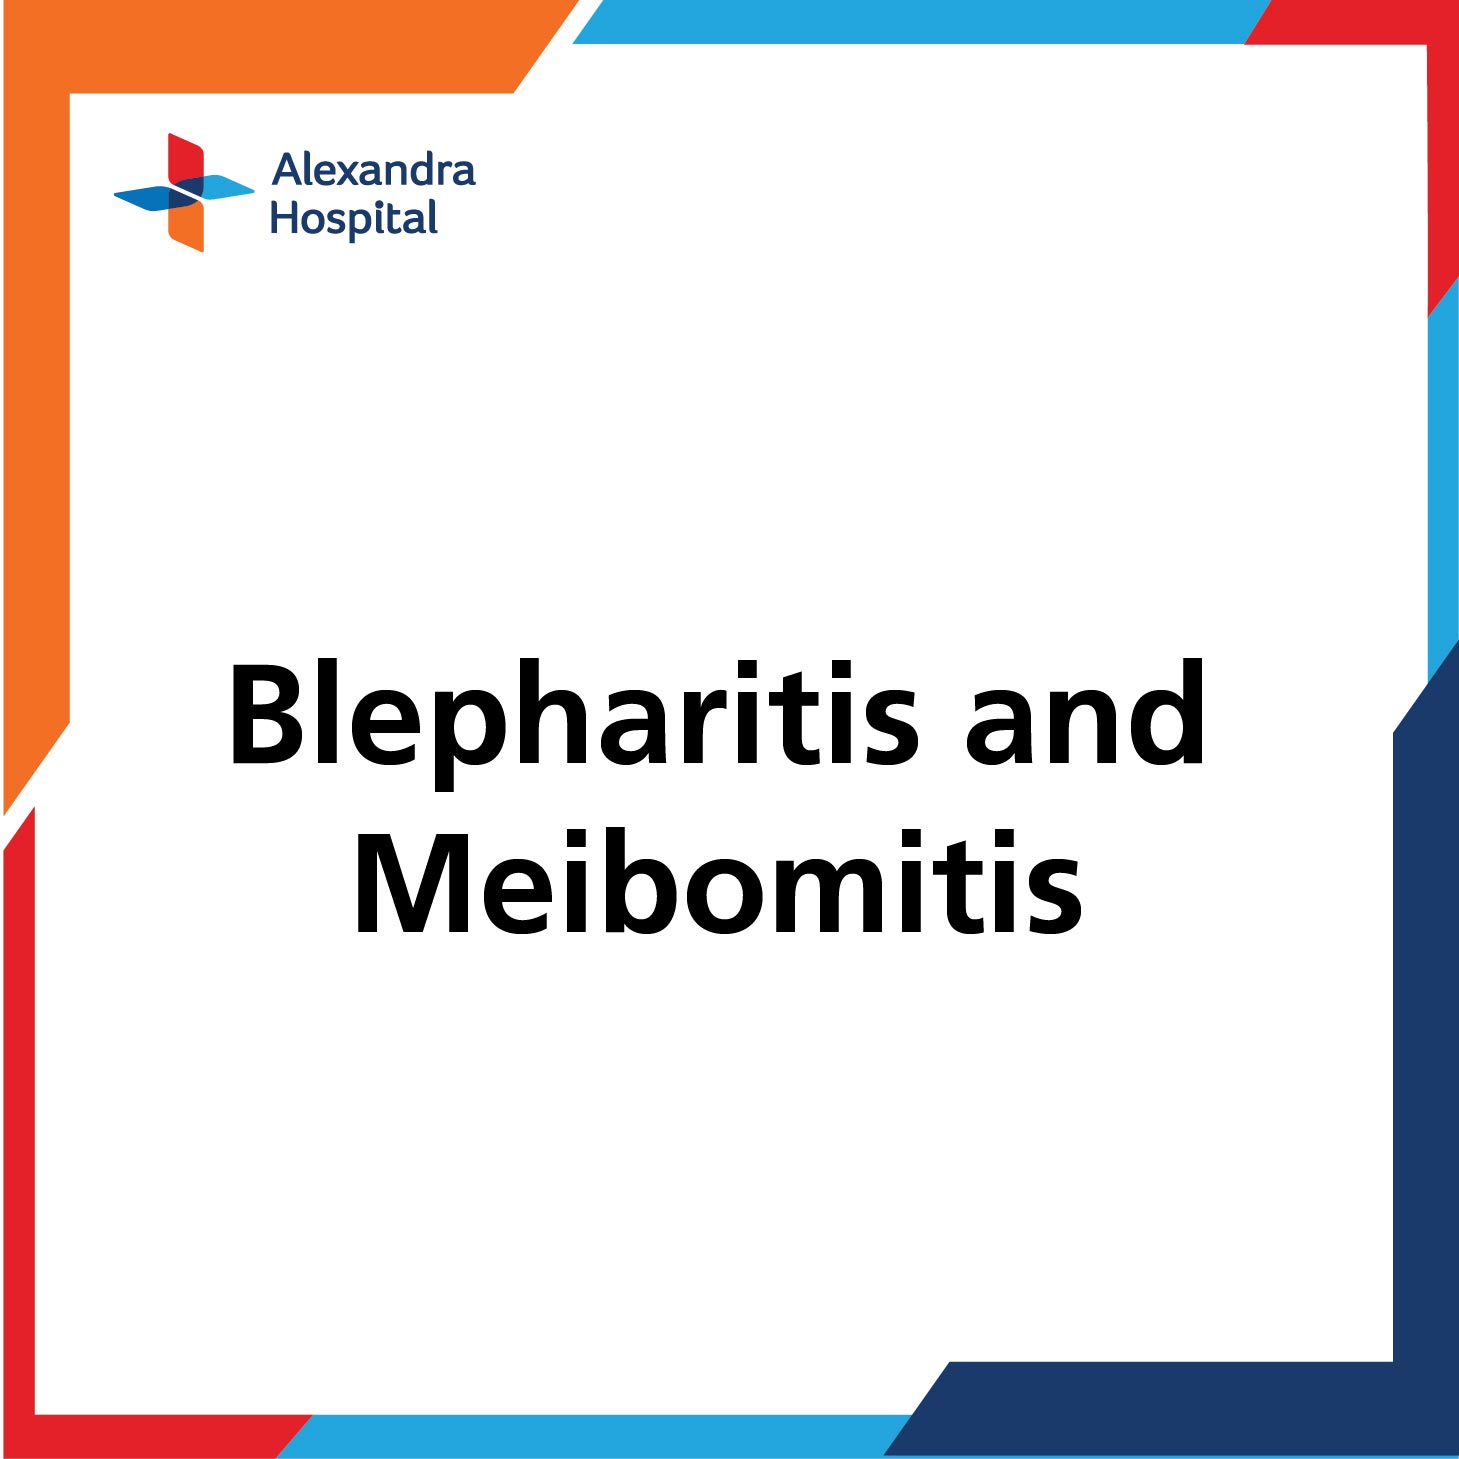 Blepharitis and Meibomitis